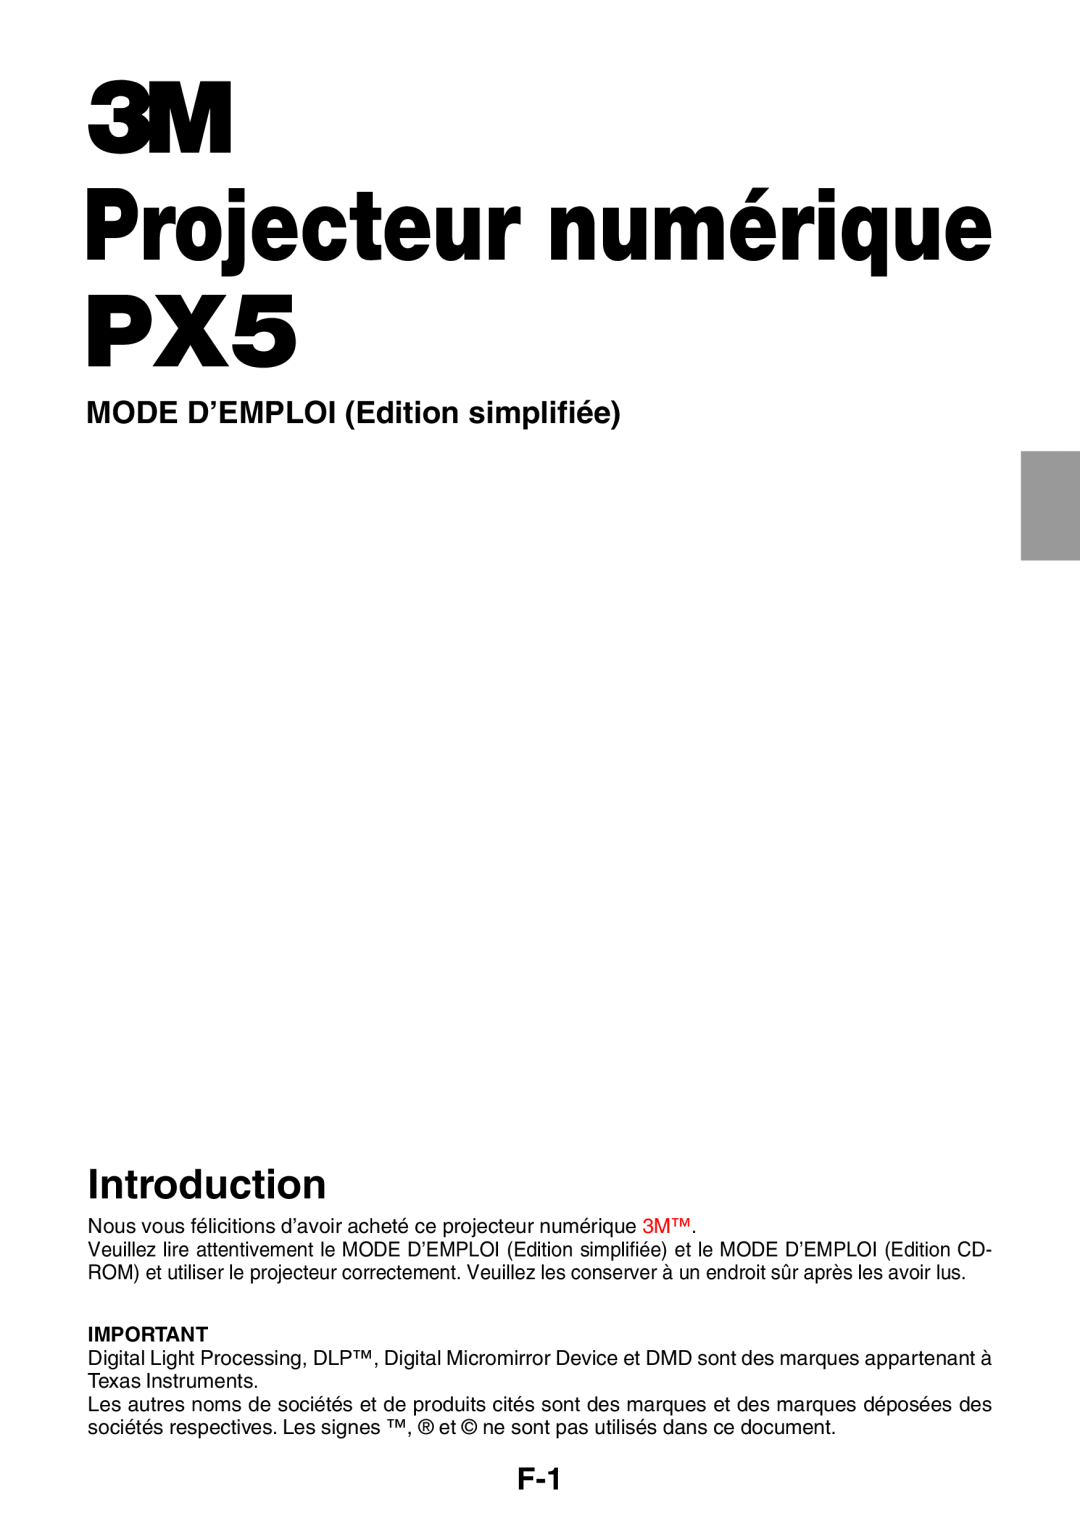 3M user manual Projecteur numérique PX5, MODE D’EMPLOI Edition simplifiée, Introduction 